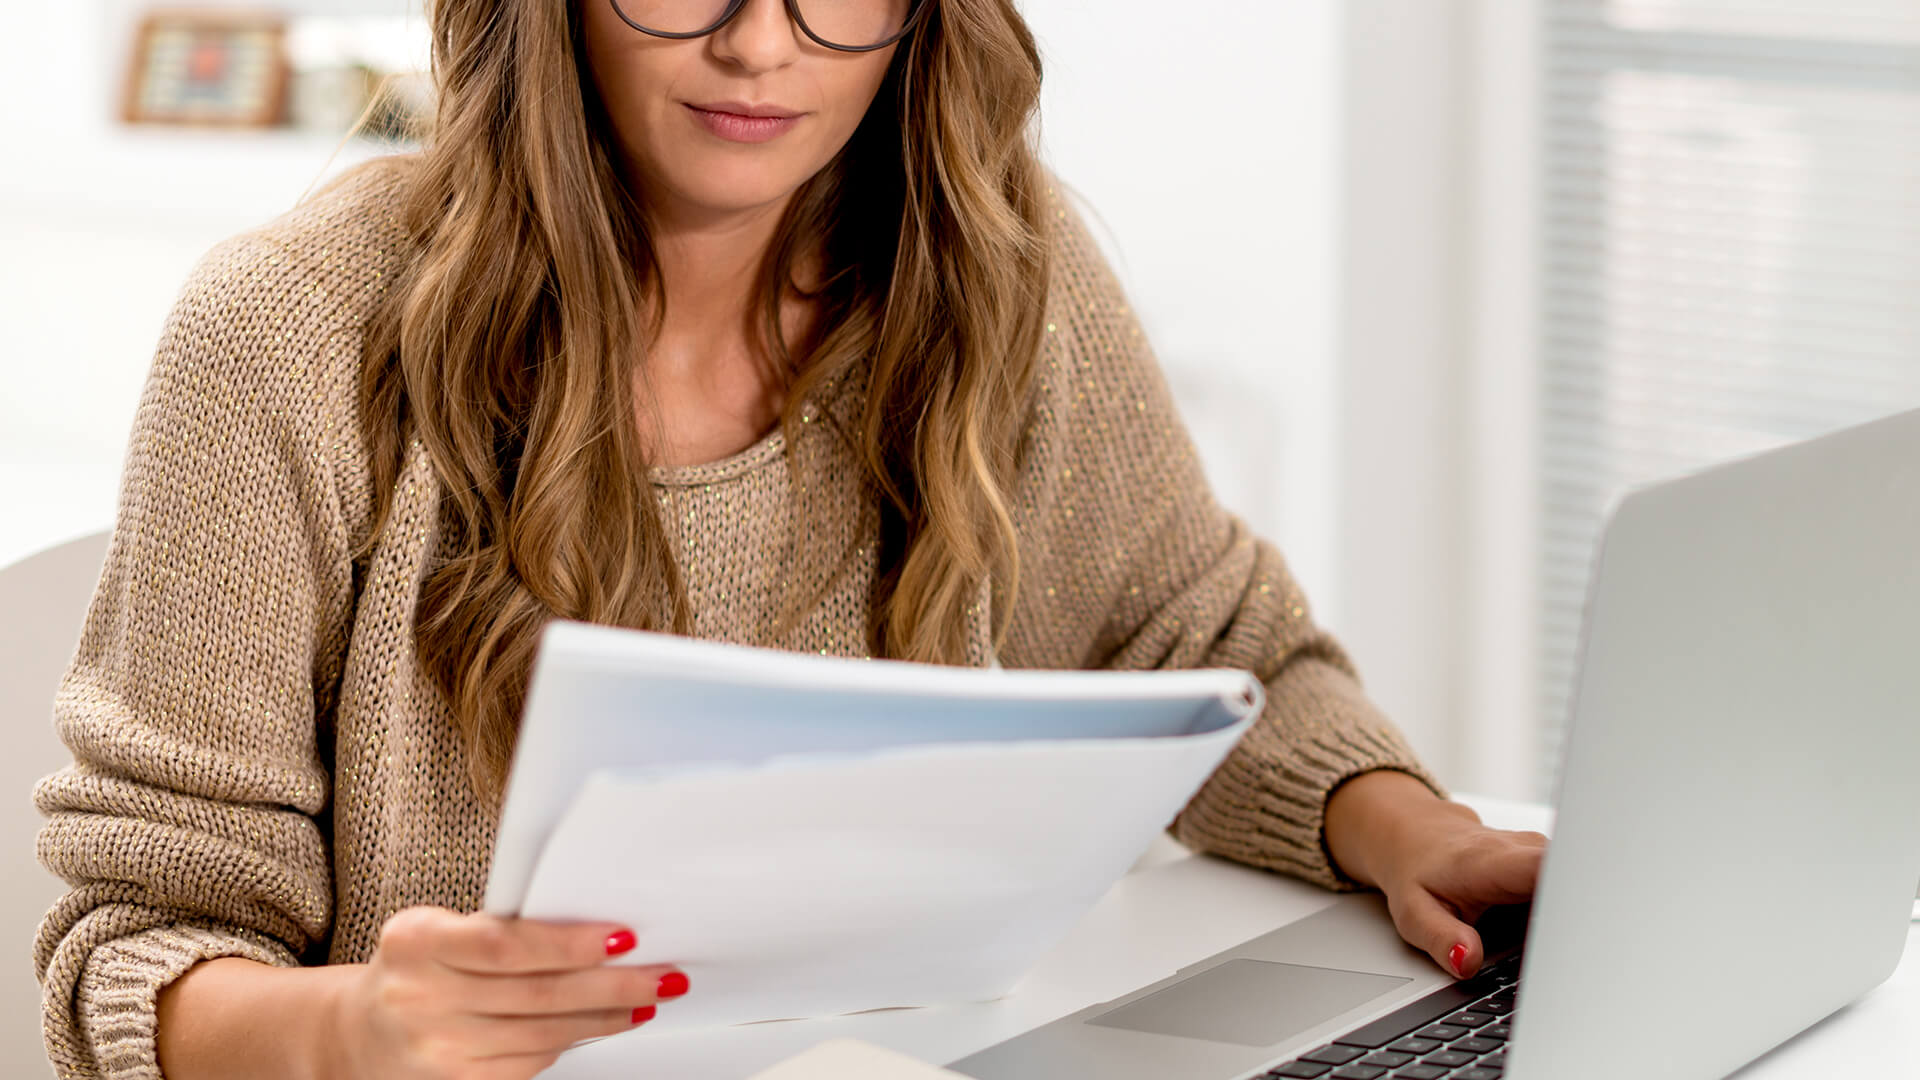 Une femme concentrée avec des lunettes examine des documents à côté de son ordinateur portable dans un bureau à domicile lumineux.